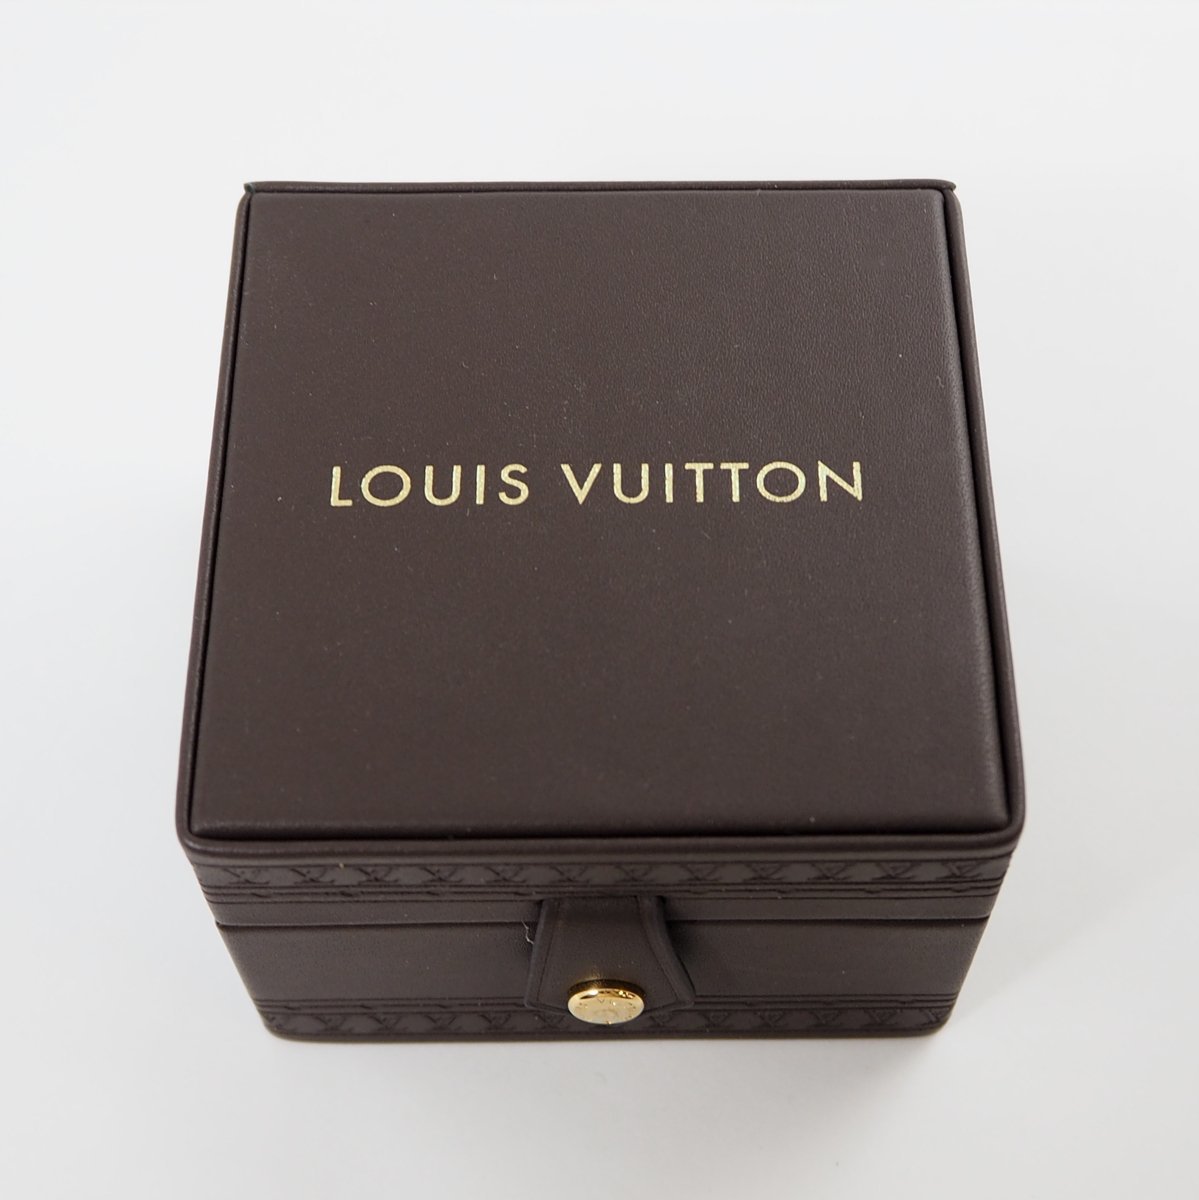 Louis Vuitton Louis Vuitton серьги кейс коробка наружная коробка [151]